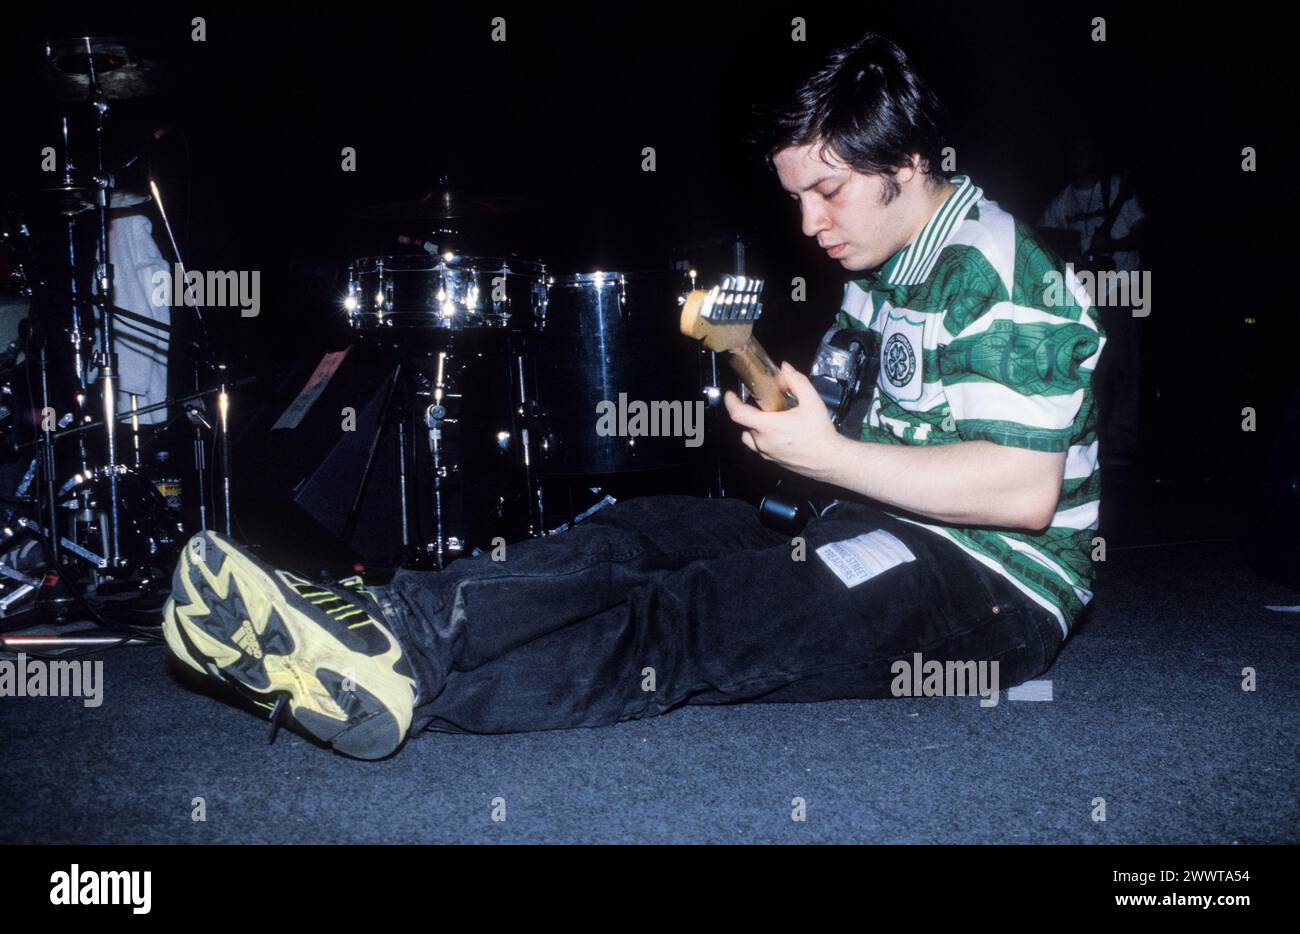 MOGWAI, ALL'INIZIO DELLA CARRIERA, CONCERTO: Un giovane Stuart Braithwaite di Mogwai che suonava come supporto ai Manic Street Preachers all'Afan Lido, Port Talbot, Galles, Regno Unito il 20 settembre 1998. Foto: Rob Watkins. INFO: I Mogwai, un gruppo post-rock scozzese formatosi nel 1995, incantano gli ascoltatori con i loro ampi paesaggi sonori e gli strumenti emozionali. Noti per le loro composizioni dinamiche e le potenti esibizioni dal vivo, la loro musica evoca una serie di emozioni, dall'introspezione all'euforia. Foto Stock